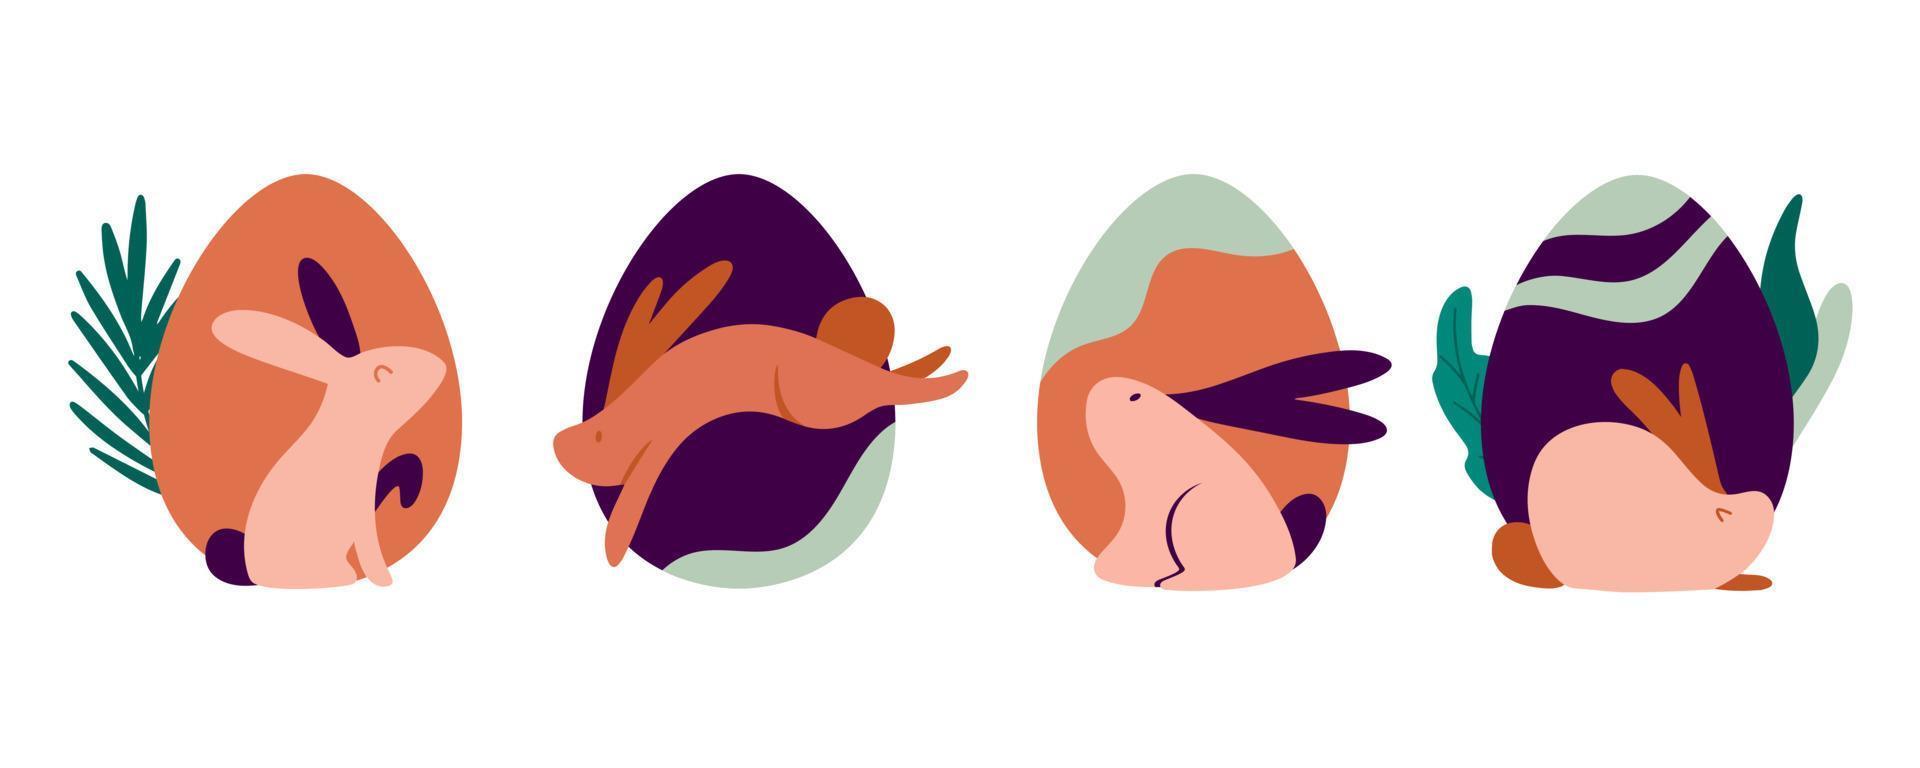 felice easter bunny disegno vettoriale. coniglio con icona a forma di uovo, elemento decorativo. illustrazione moderna in stile boho. isolato su sfondo bianco. vettore